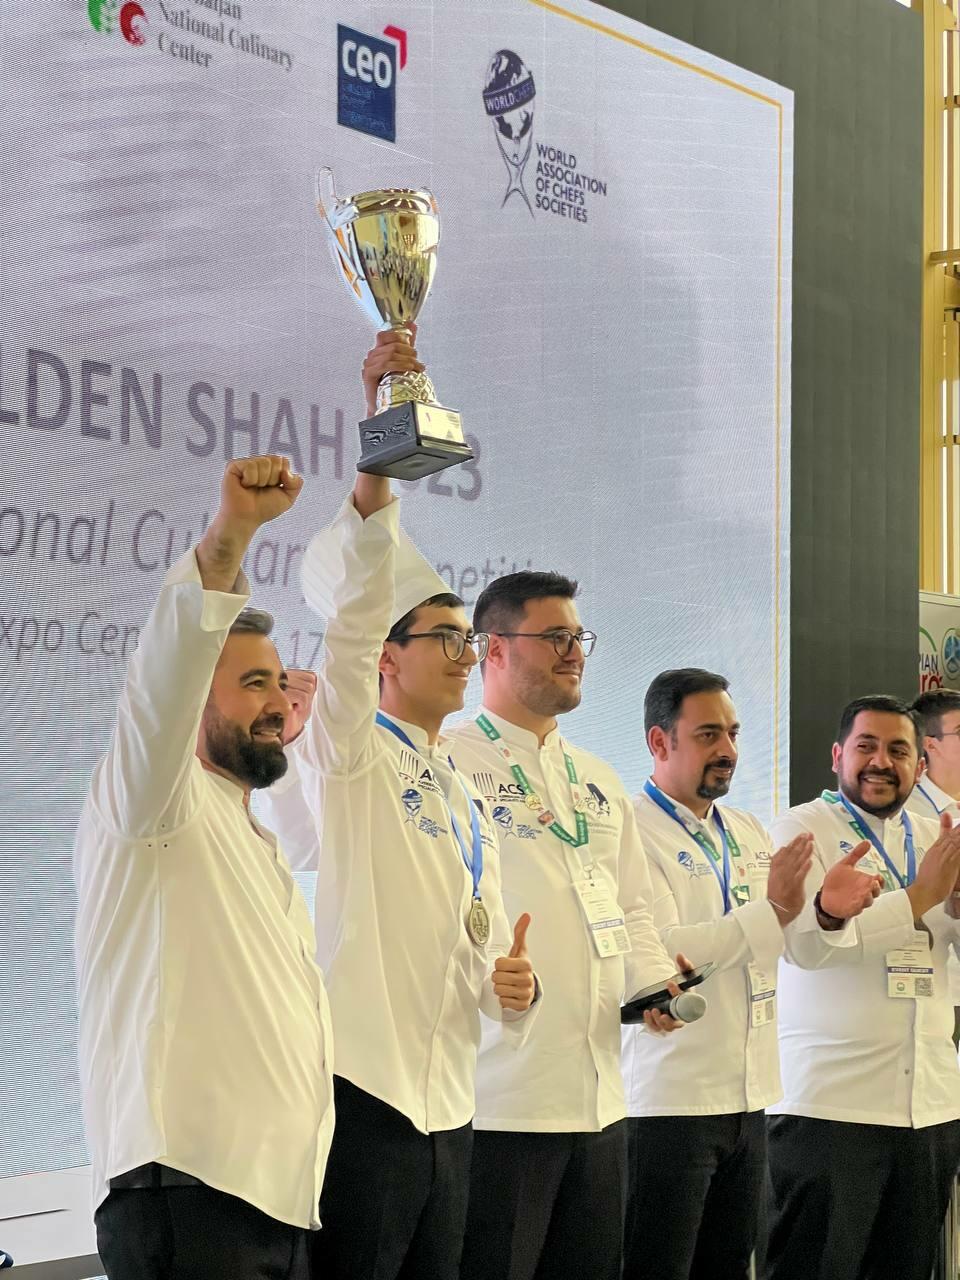 Успех студентов Центра Кулинарных Искусств CÀSÀ на чемпионате «Golden Shah»